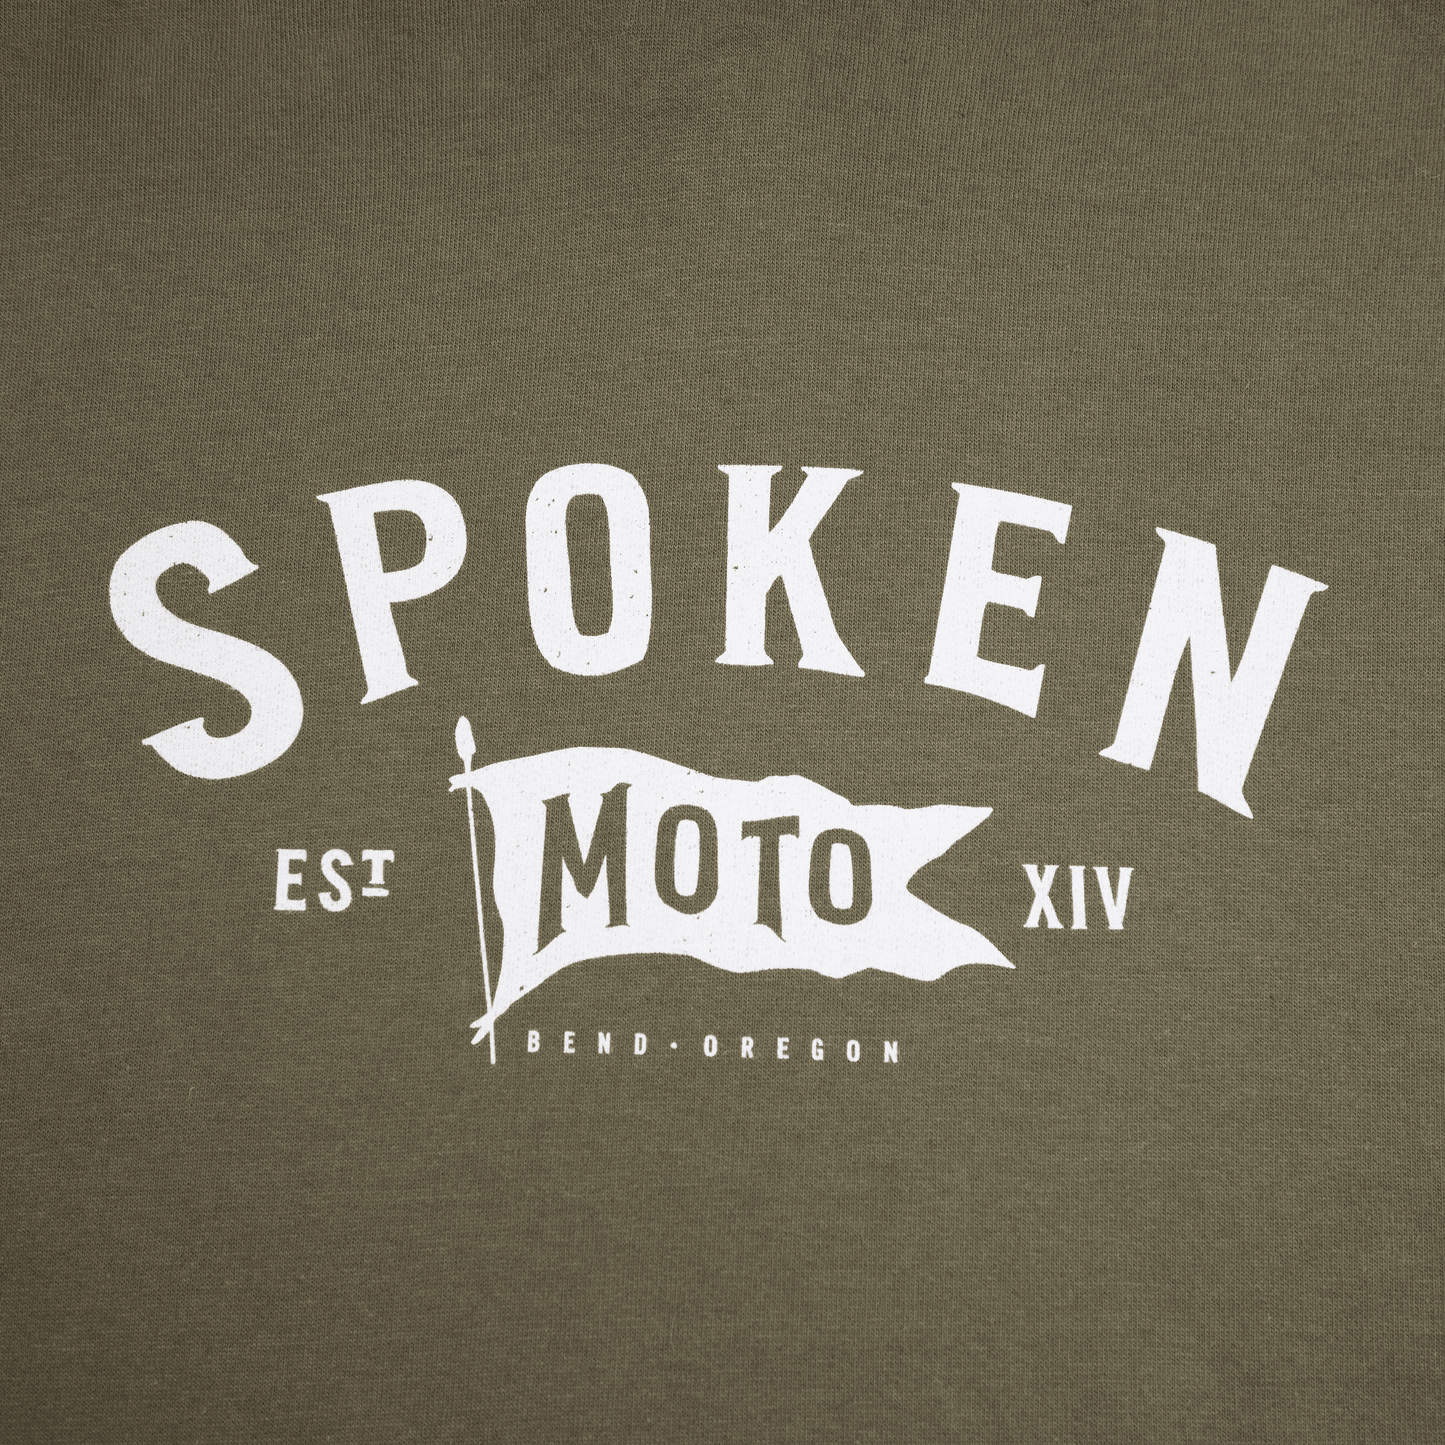 Detail shot of Spoken Moto logo.